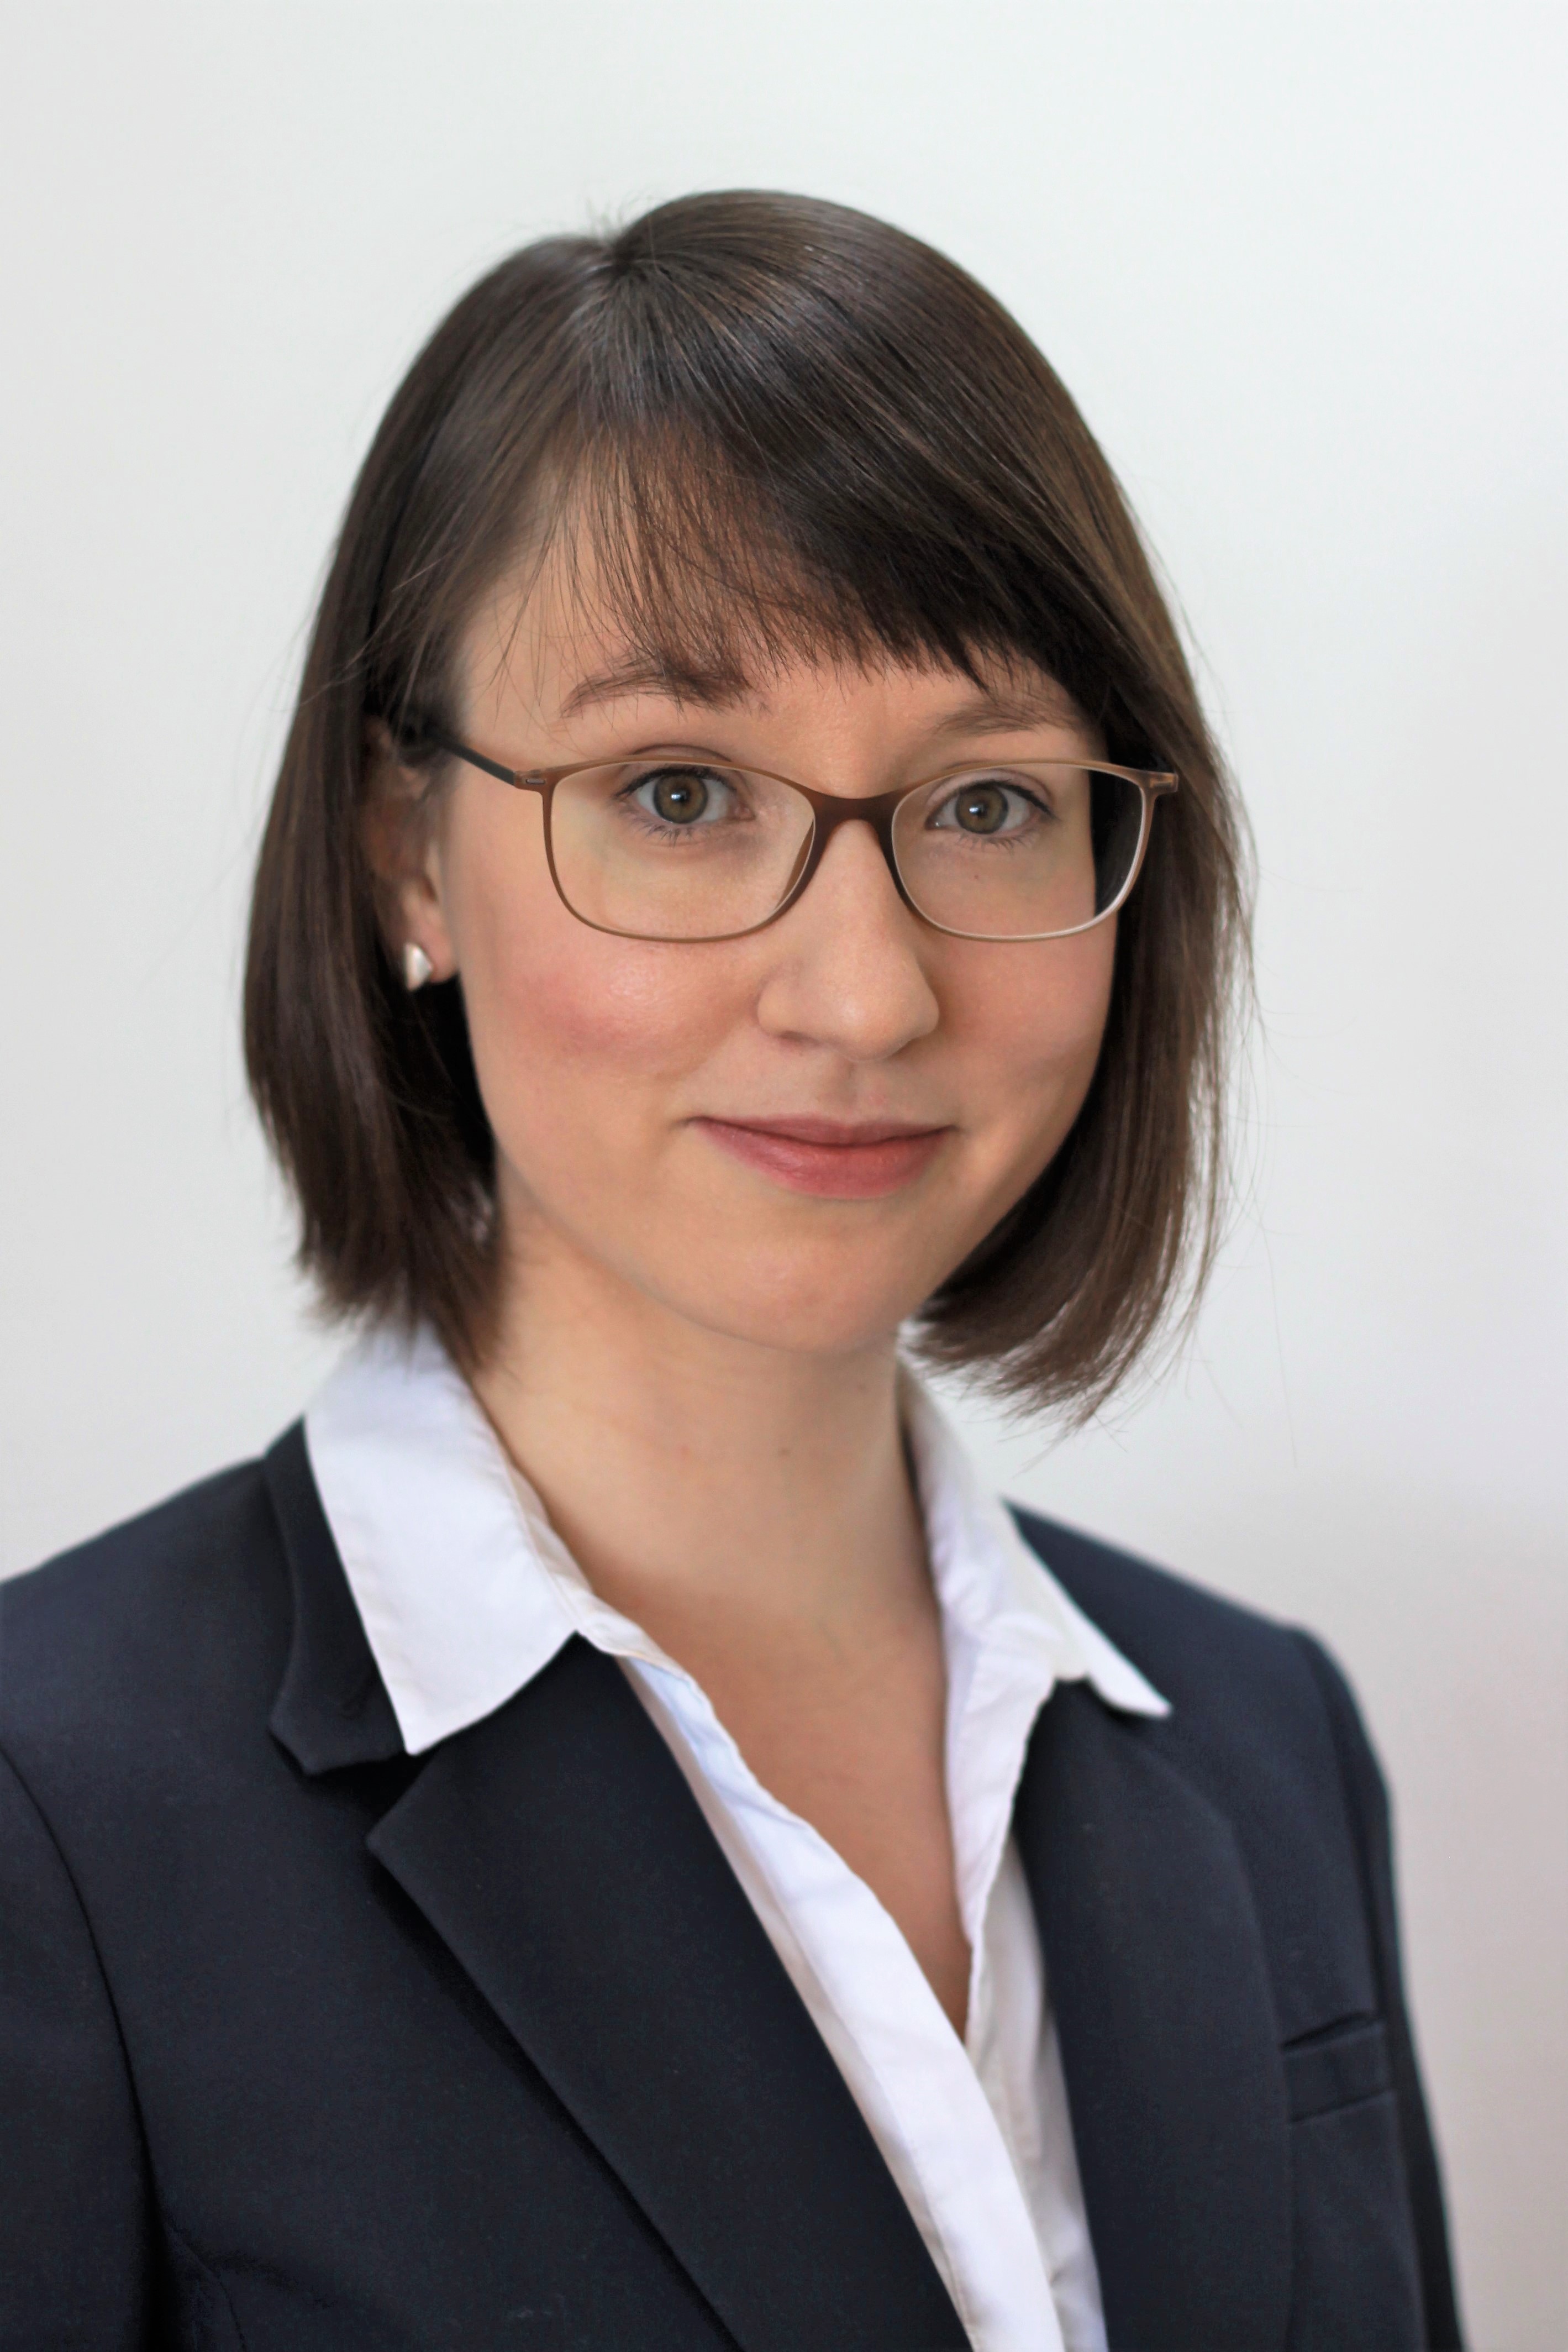 Johanna Stahlmann